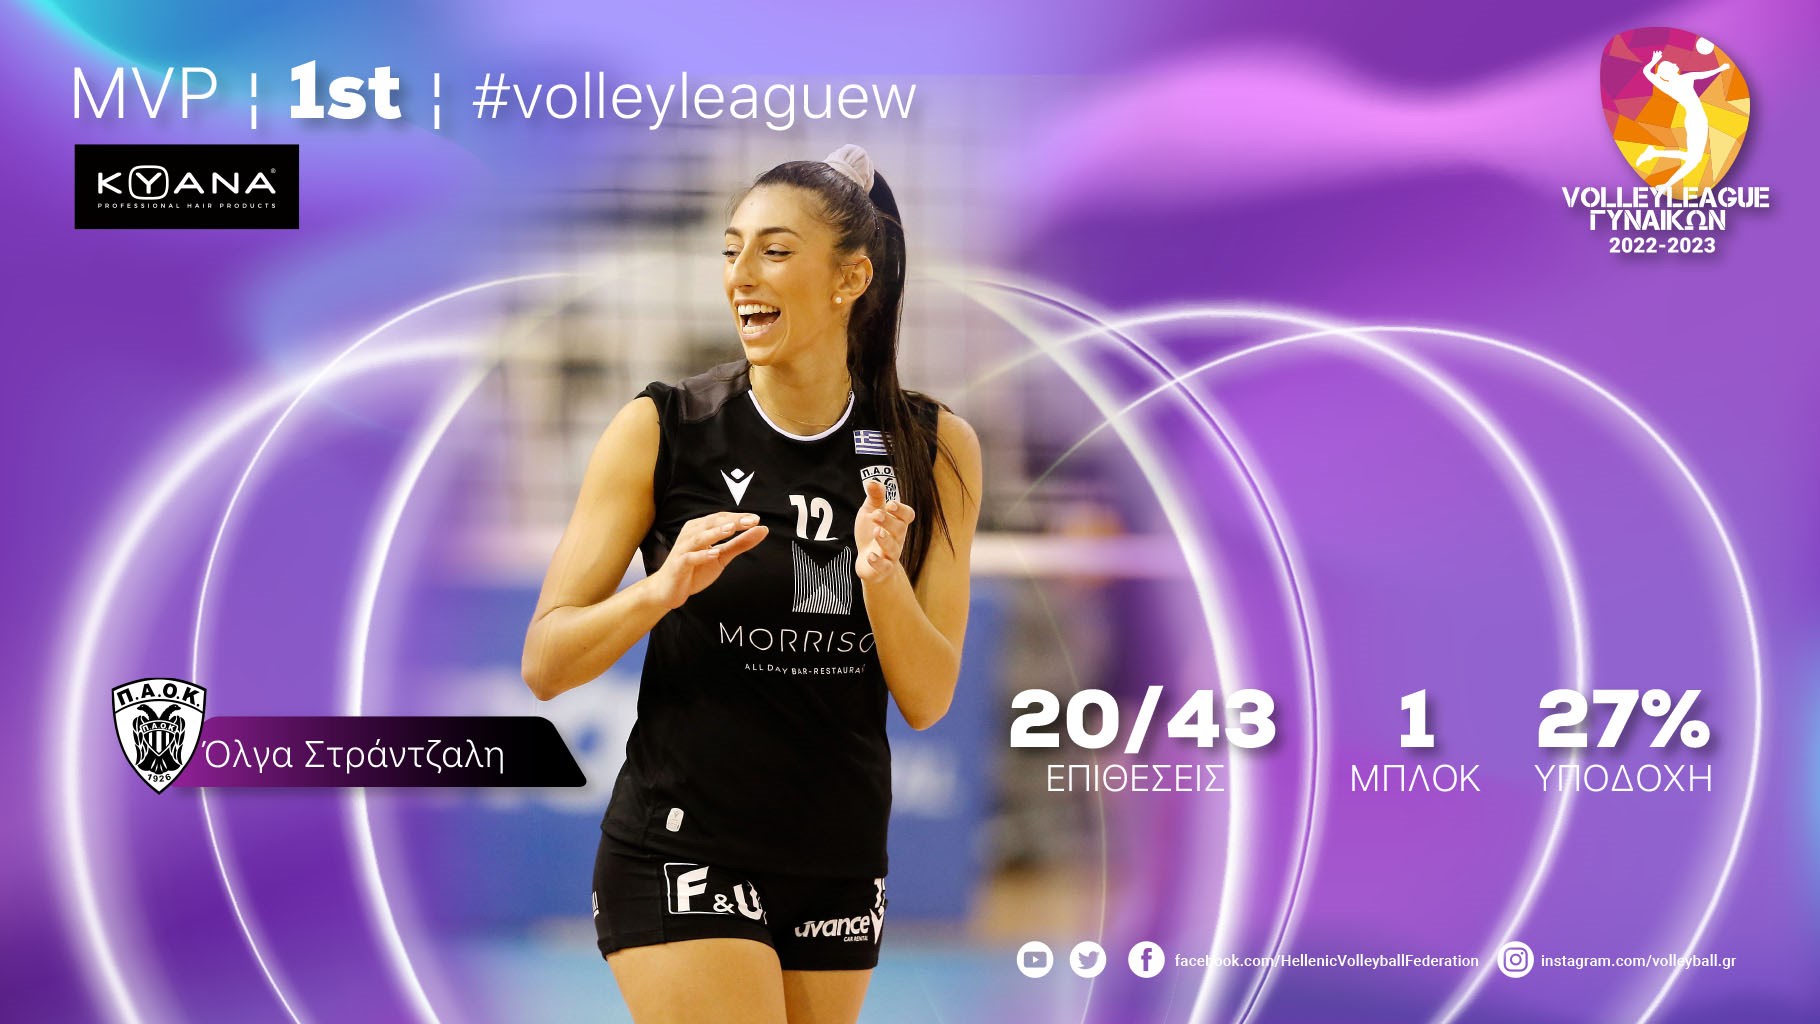 ΠΑΟΚ: MVP της 1ης αγωνιστικής της Volley League Γυναικών η Στράντζαλη